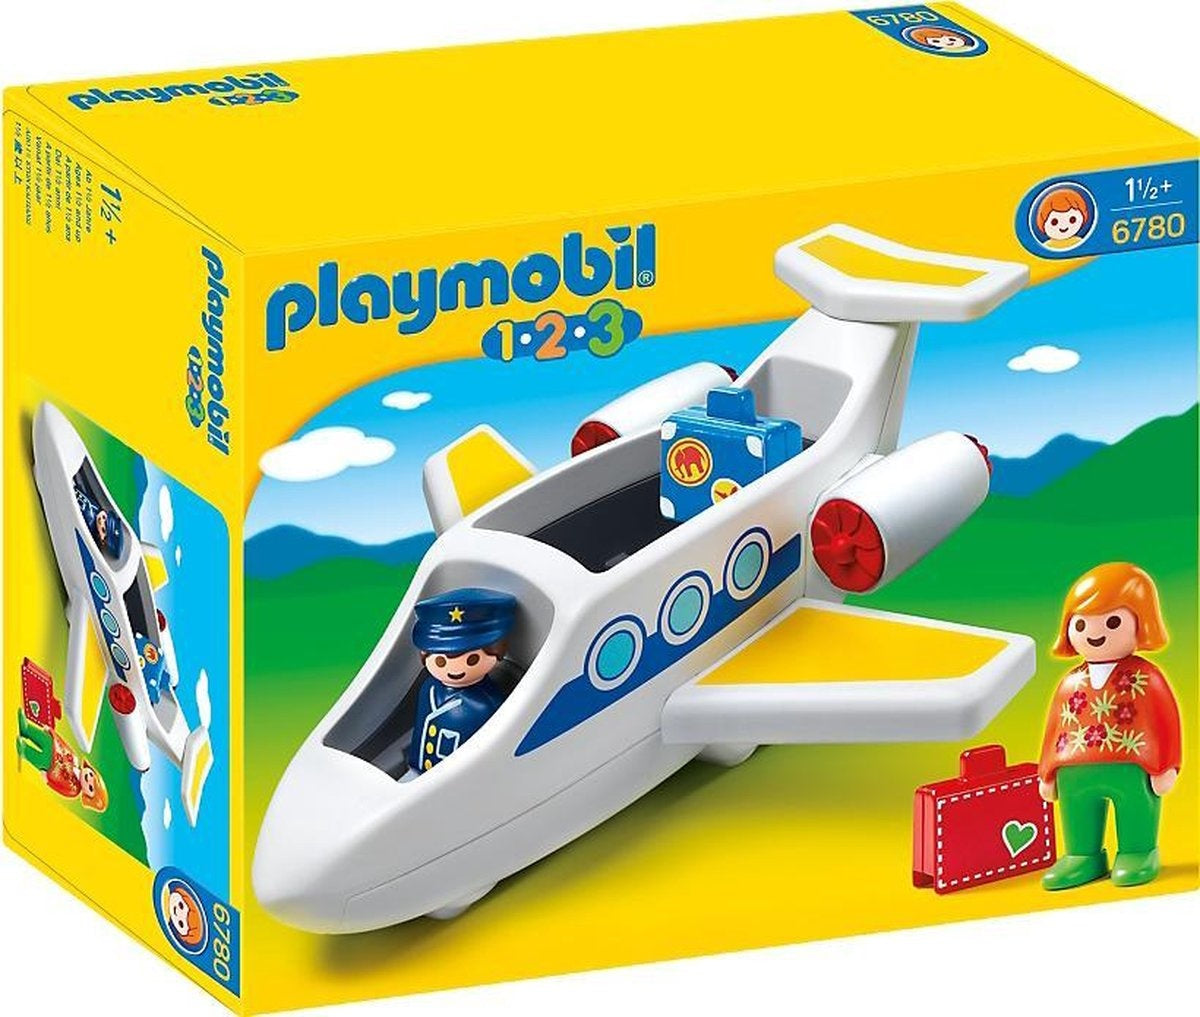 Playmobil - 6780 - plane